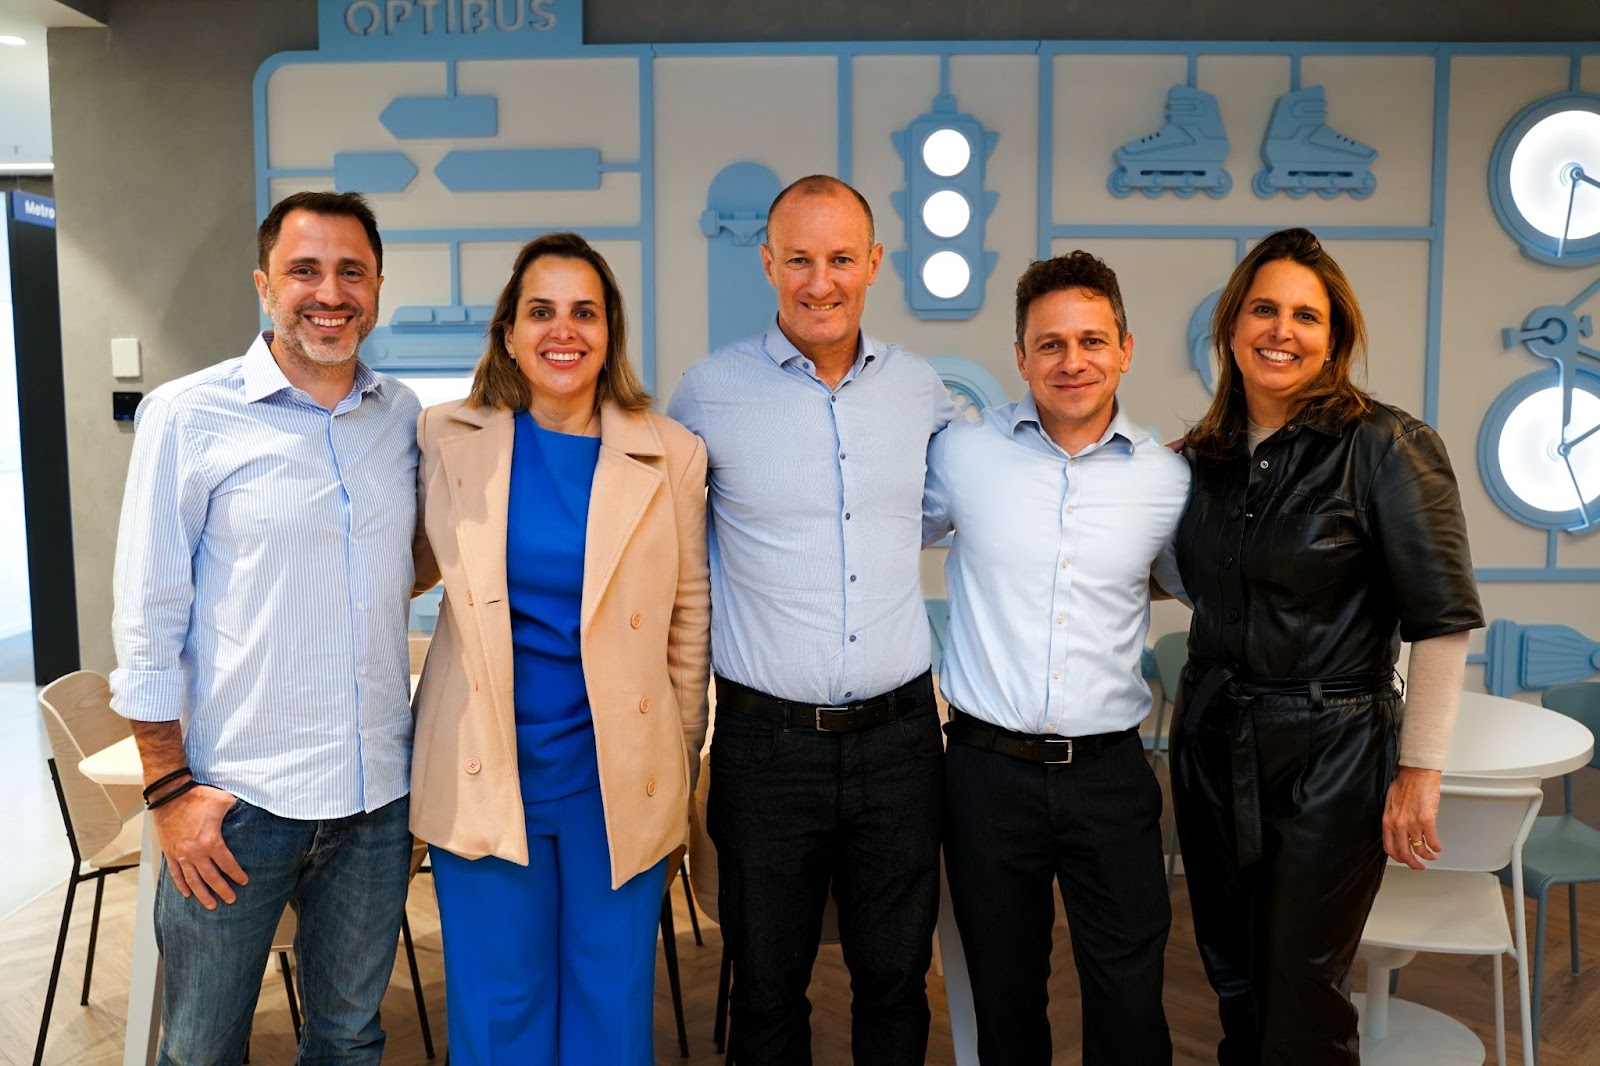 A MobiBrasil visitó la sede de Optibus, en Israel, para discutir estrategias para llevar la innovación tecnológica a sus operaciones. De izquierda a derecha: César Olmos, director general de Cittamobi; Tatiana Chaves, socia de MobiBrasil; Ronen Avraham, Gerente General de Optibus LATAM; Eitan Yanovsky, CTO y cofundador de Optibus; y Niege Chaves, propietario de MobiBrasil y fundador de Cittamobi.